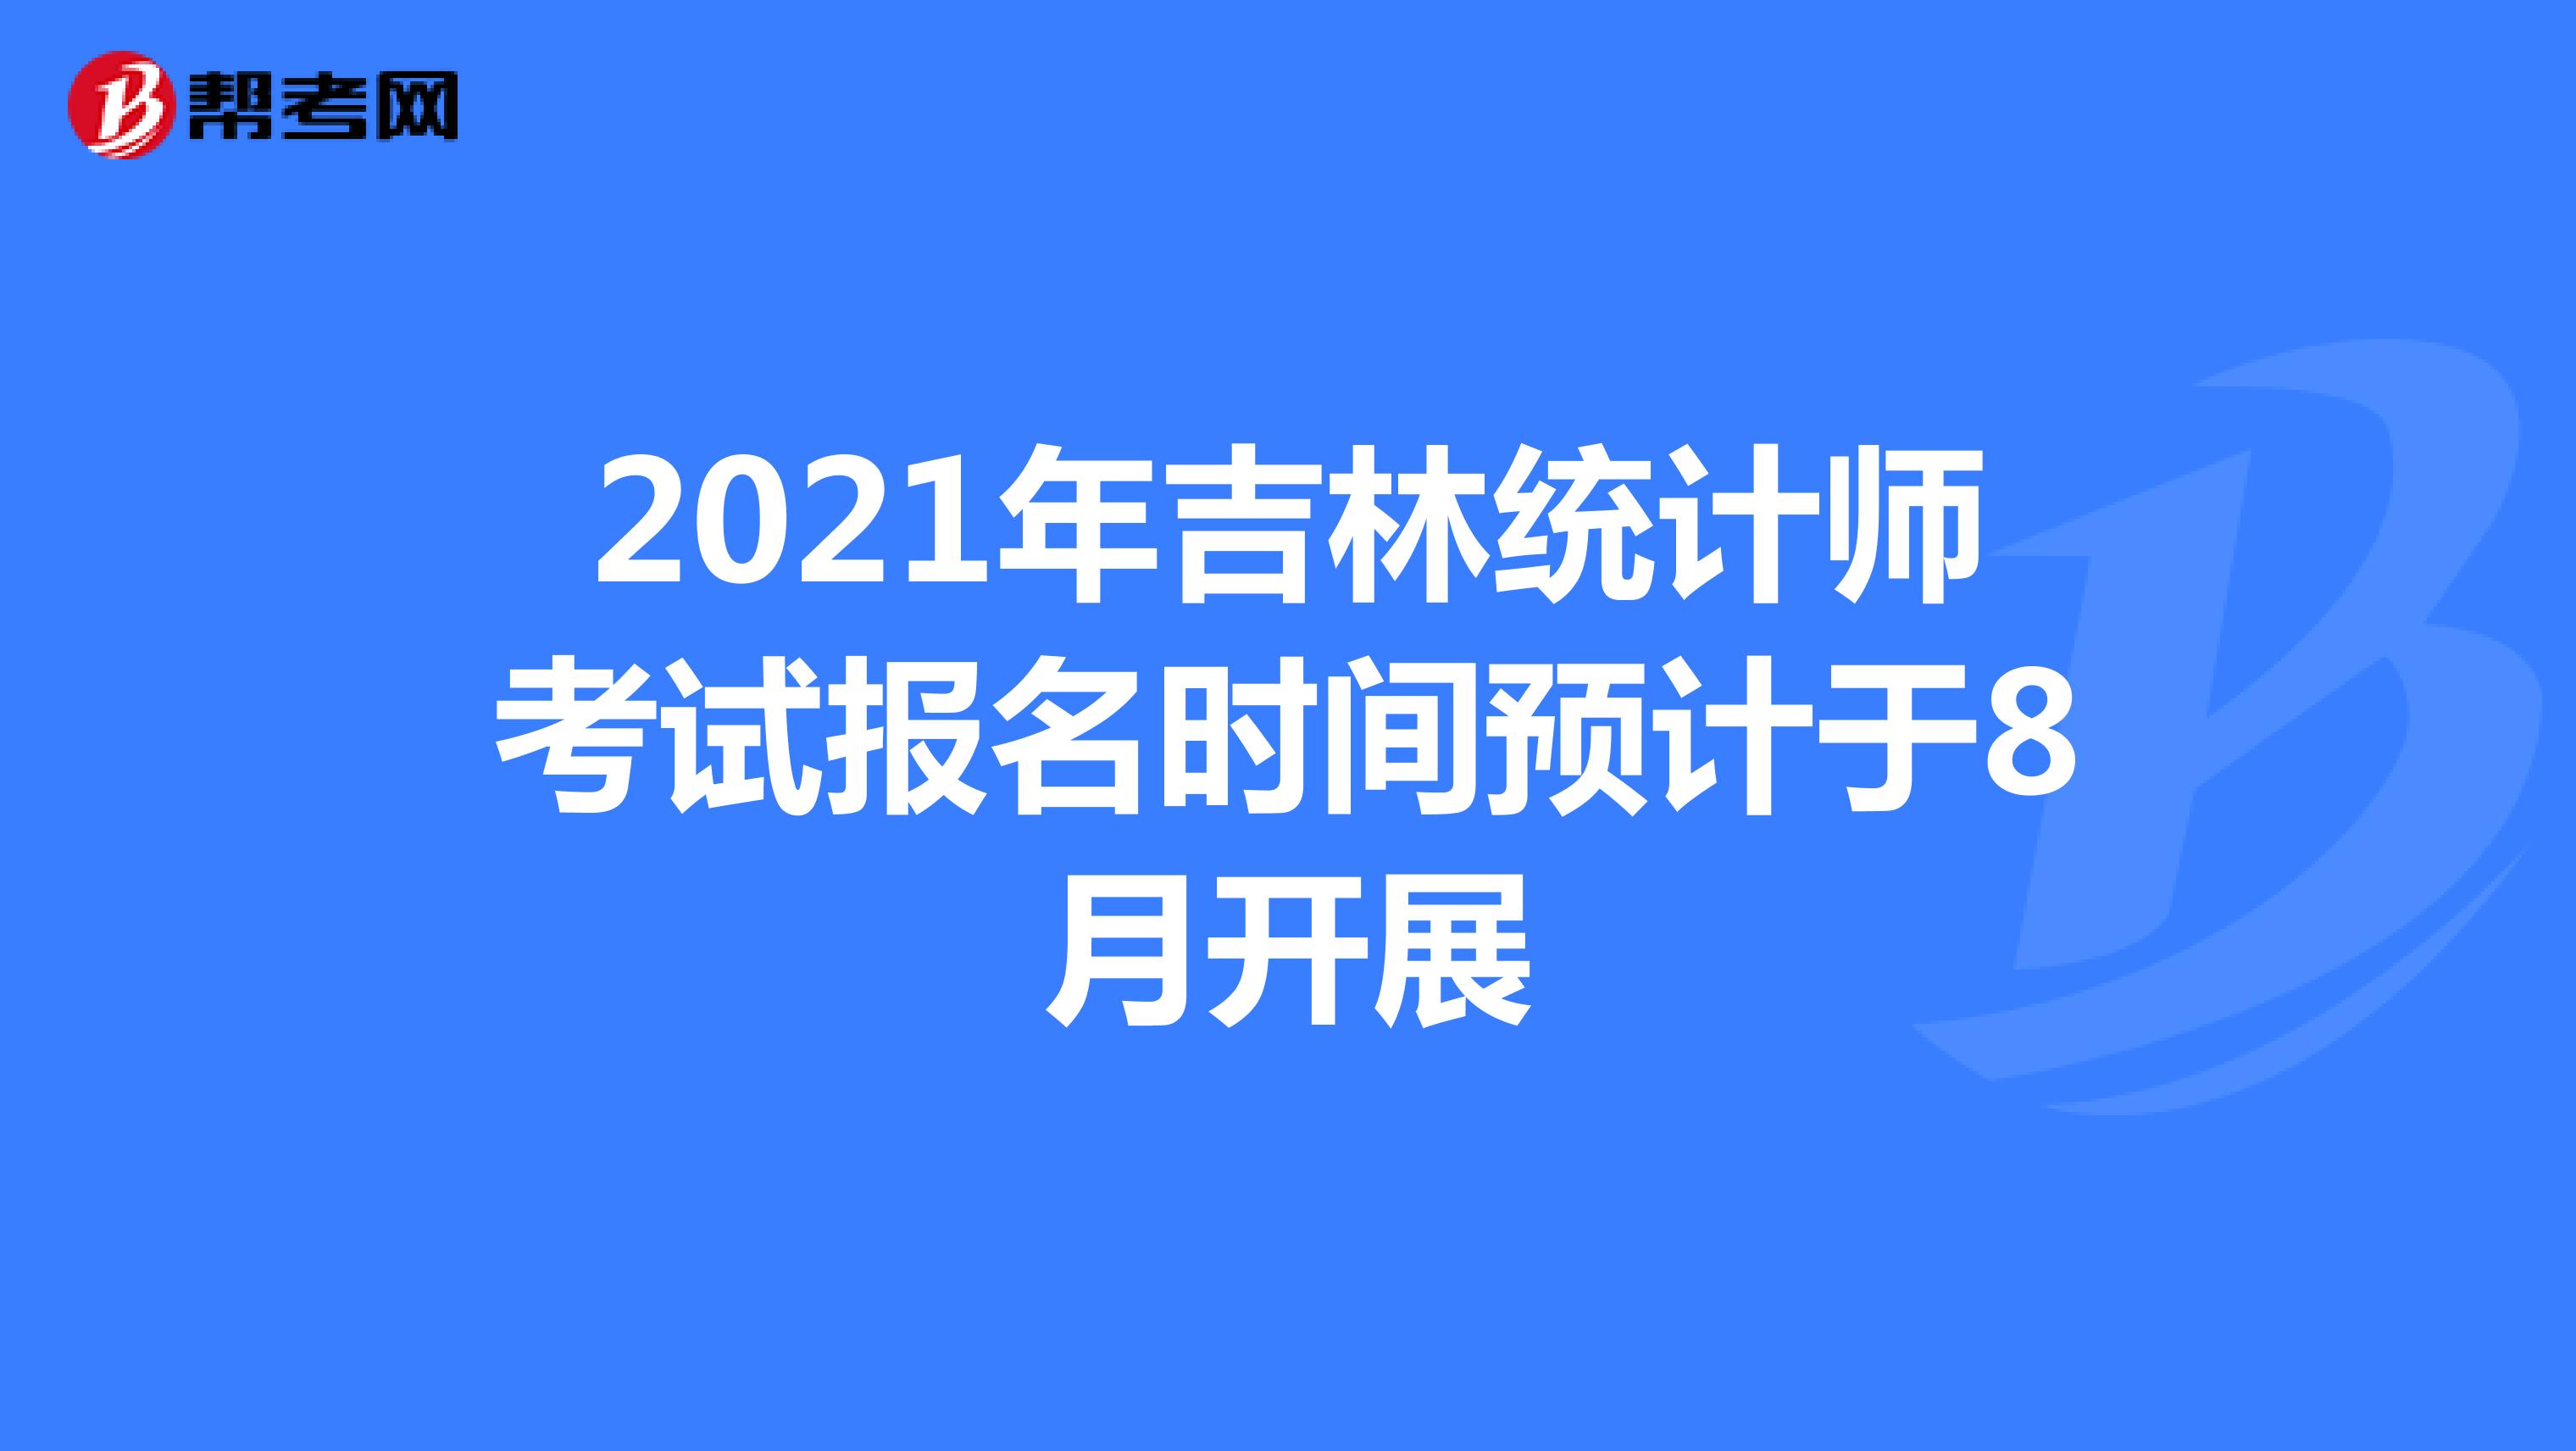 2021年吉林统计师考试报名时间预计于8月开展